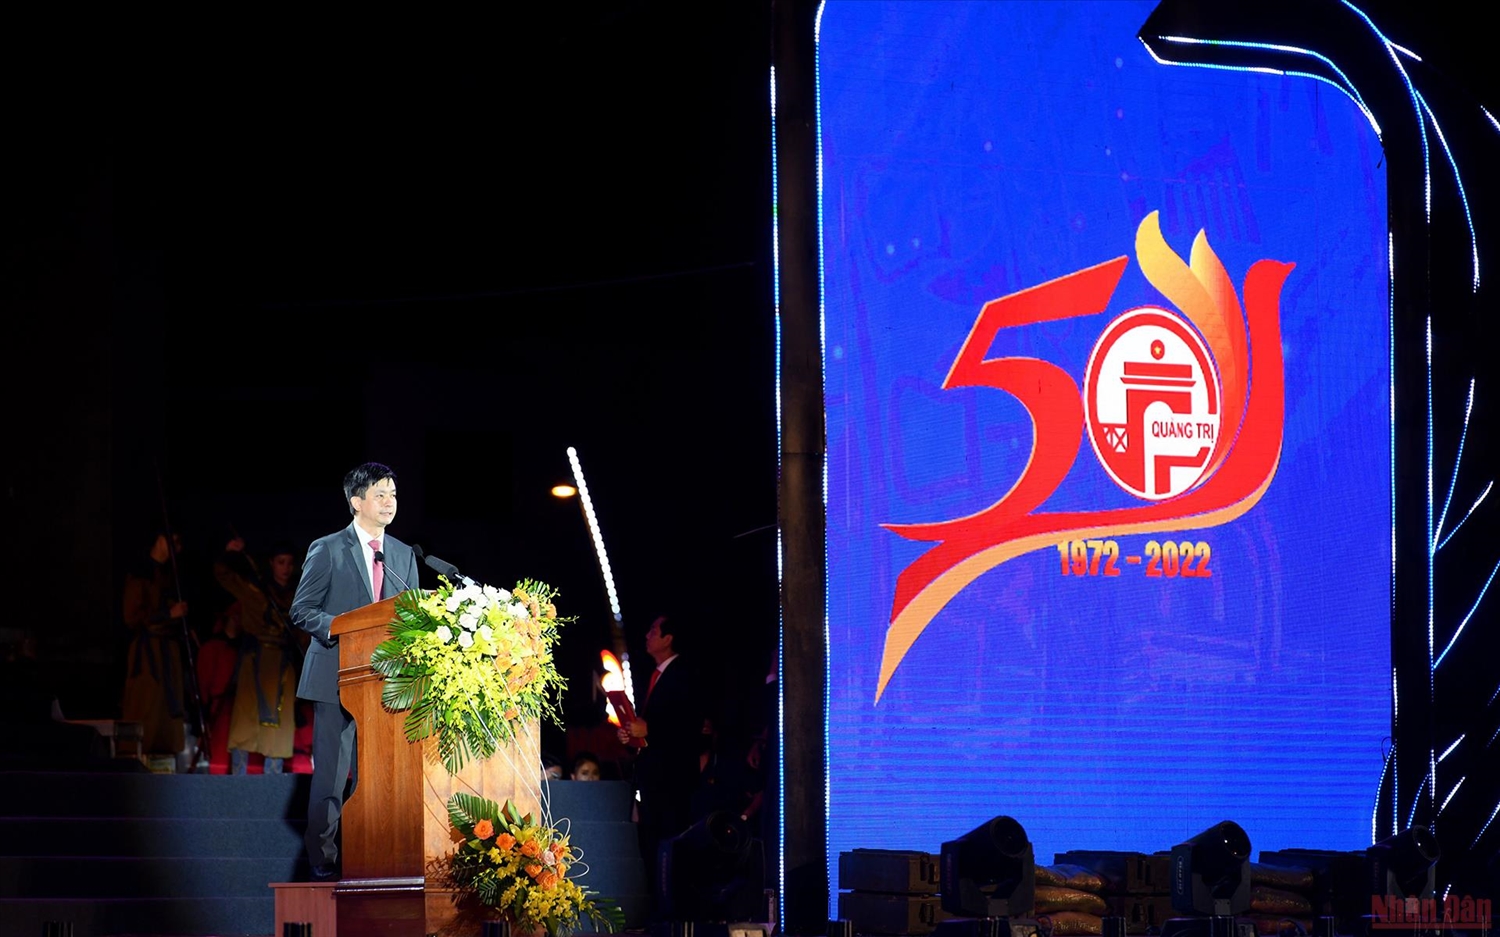 Đồng chí Lê Quang Tùng, Ủy viên Trung ương Đảng, Bí thư Tỉnh ủy Quảng Trị phát biểu tại lễ kỷ niệm. (Ảnh: THÀNH ĐẠT) 